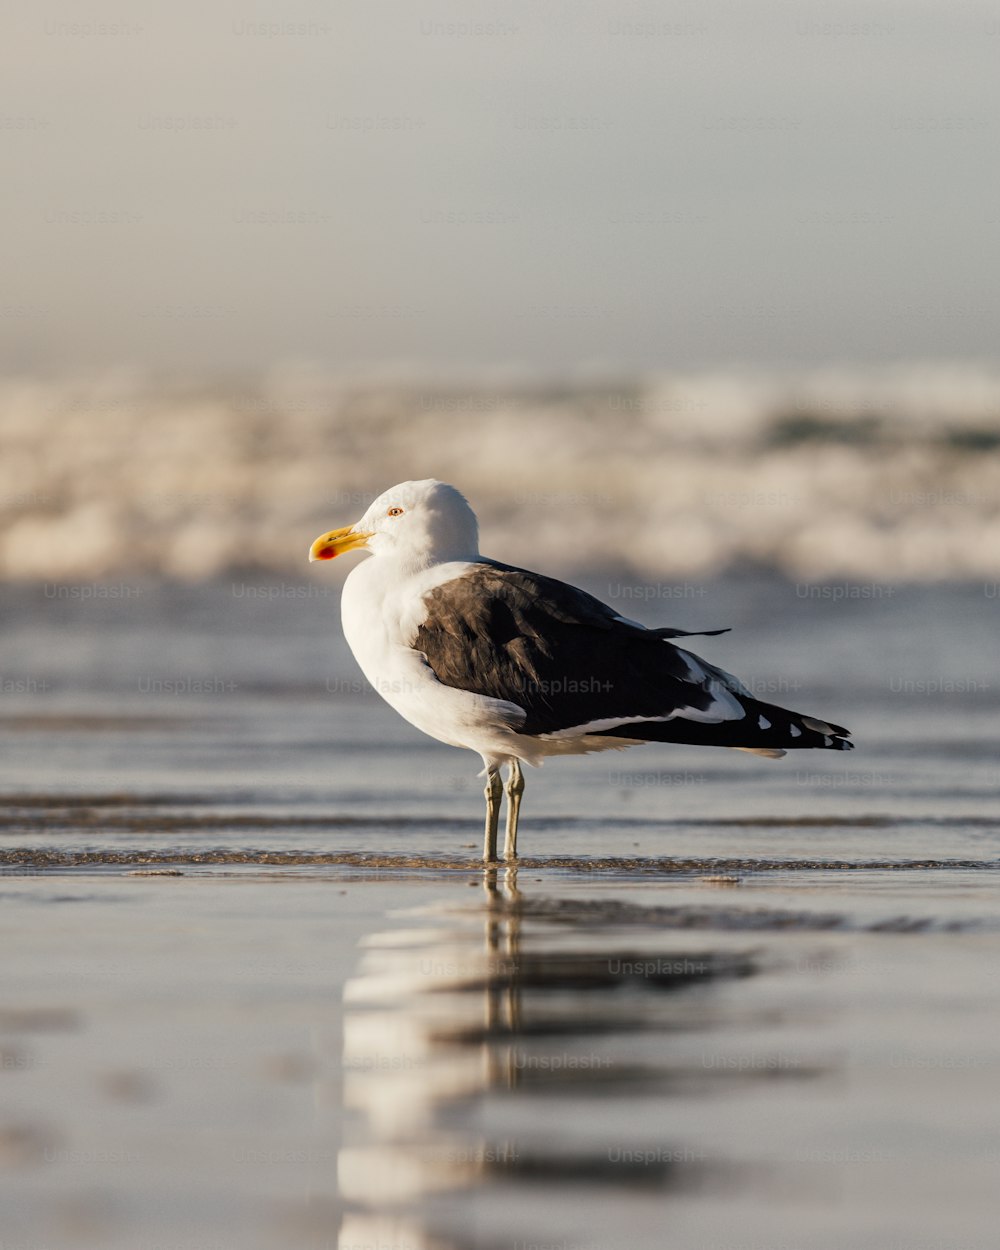 Un pájaro parado en la playa